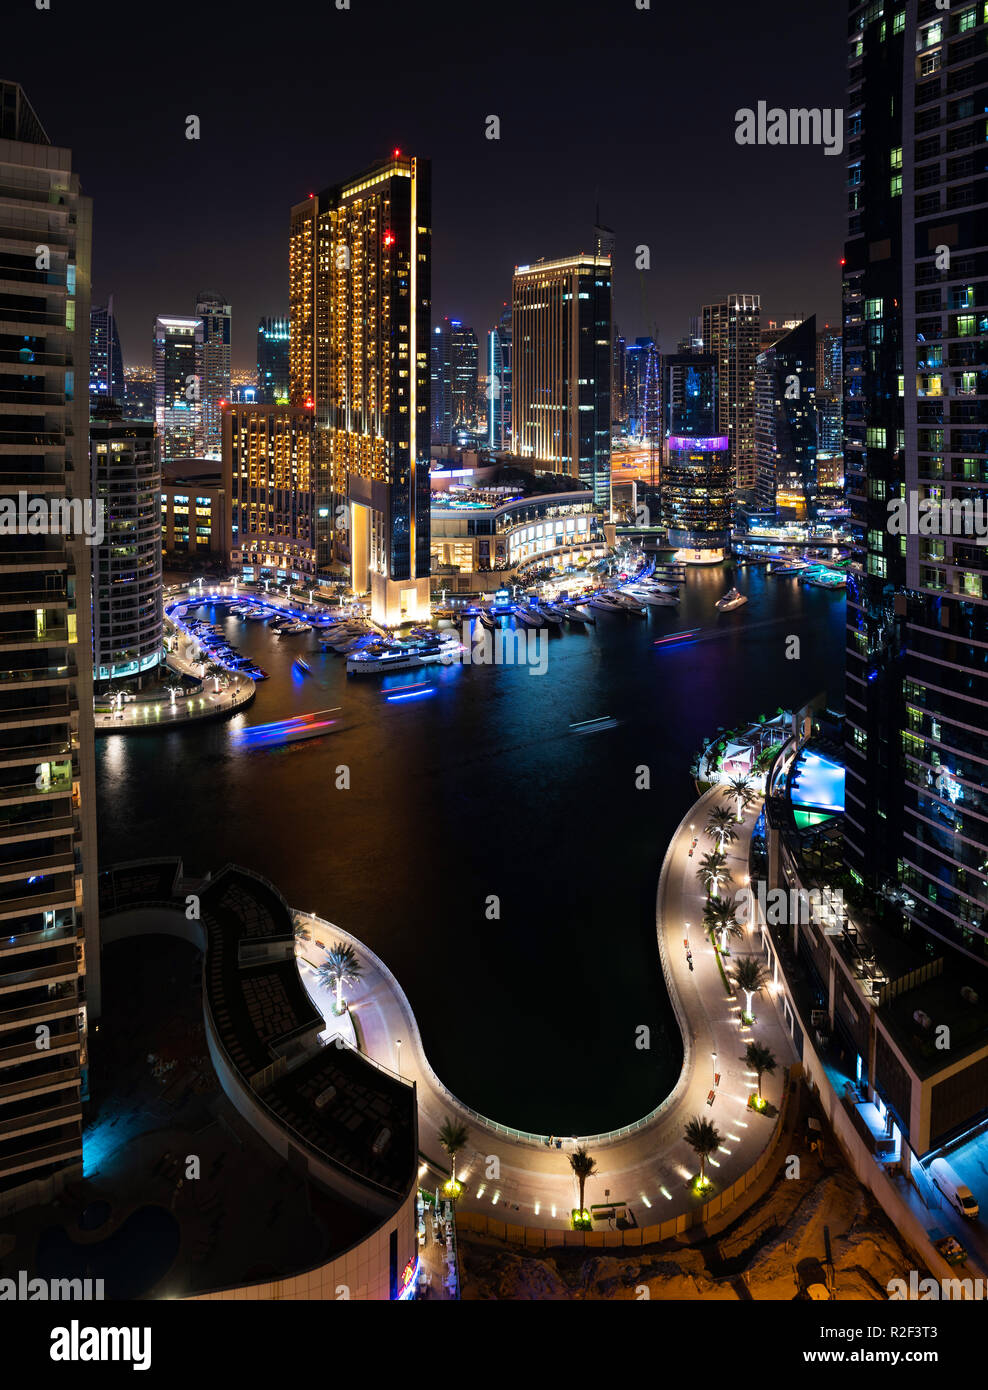 Dubai, Vereinigte Arabische Emirate - November 16, 2018: Dubai Marina Nacht Blick auf moderne Architektur und Luxus der berühmten Reiseziel Stockfoto